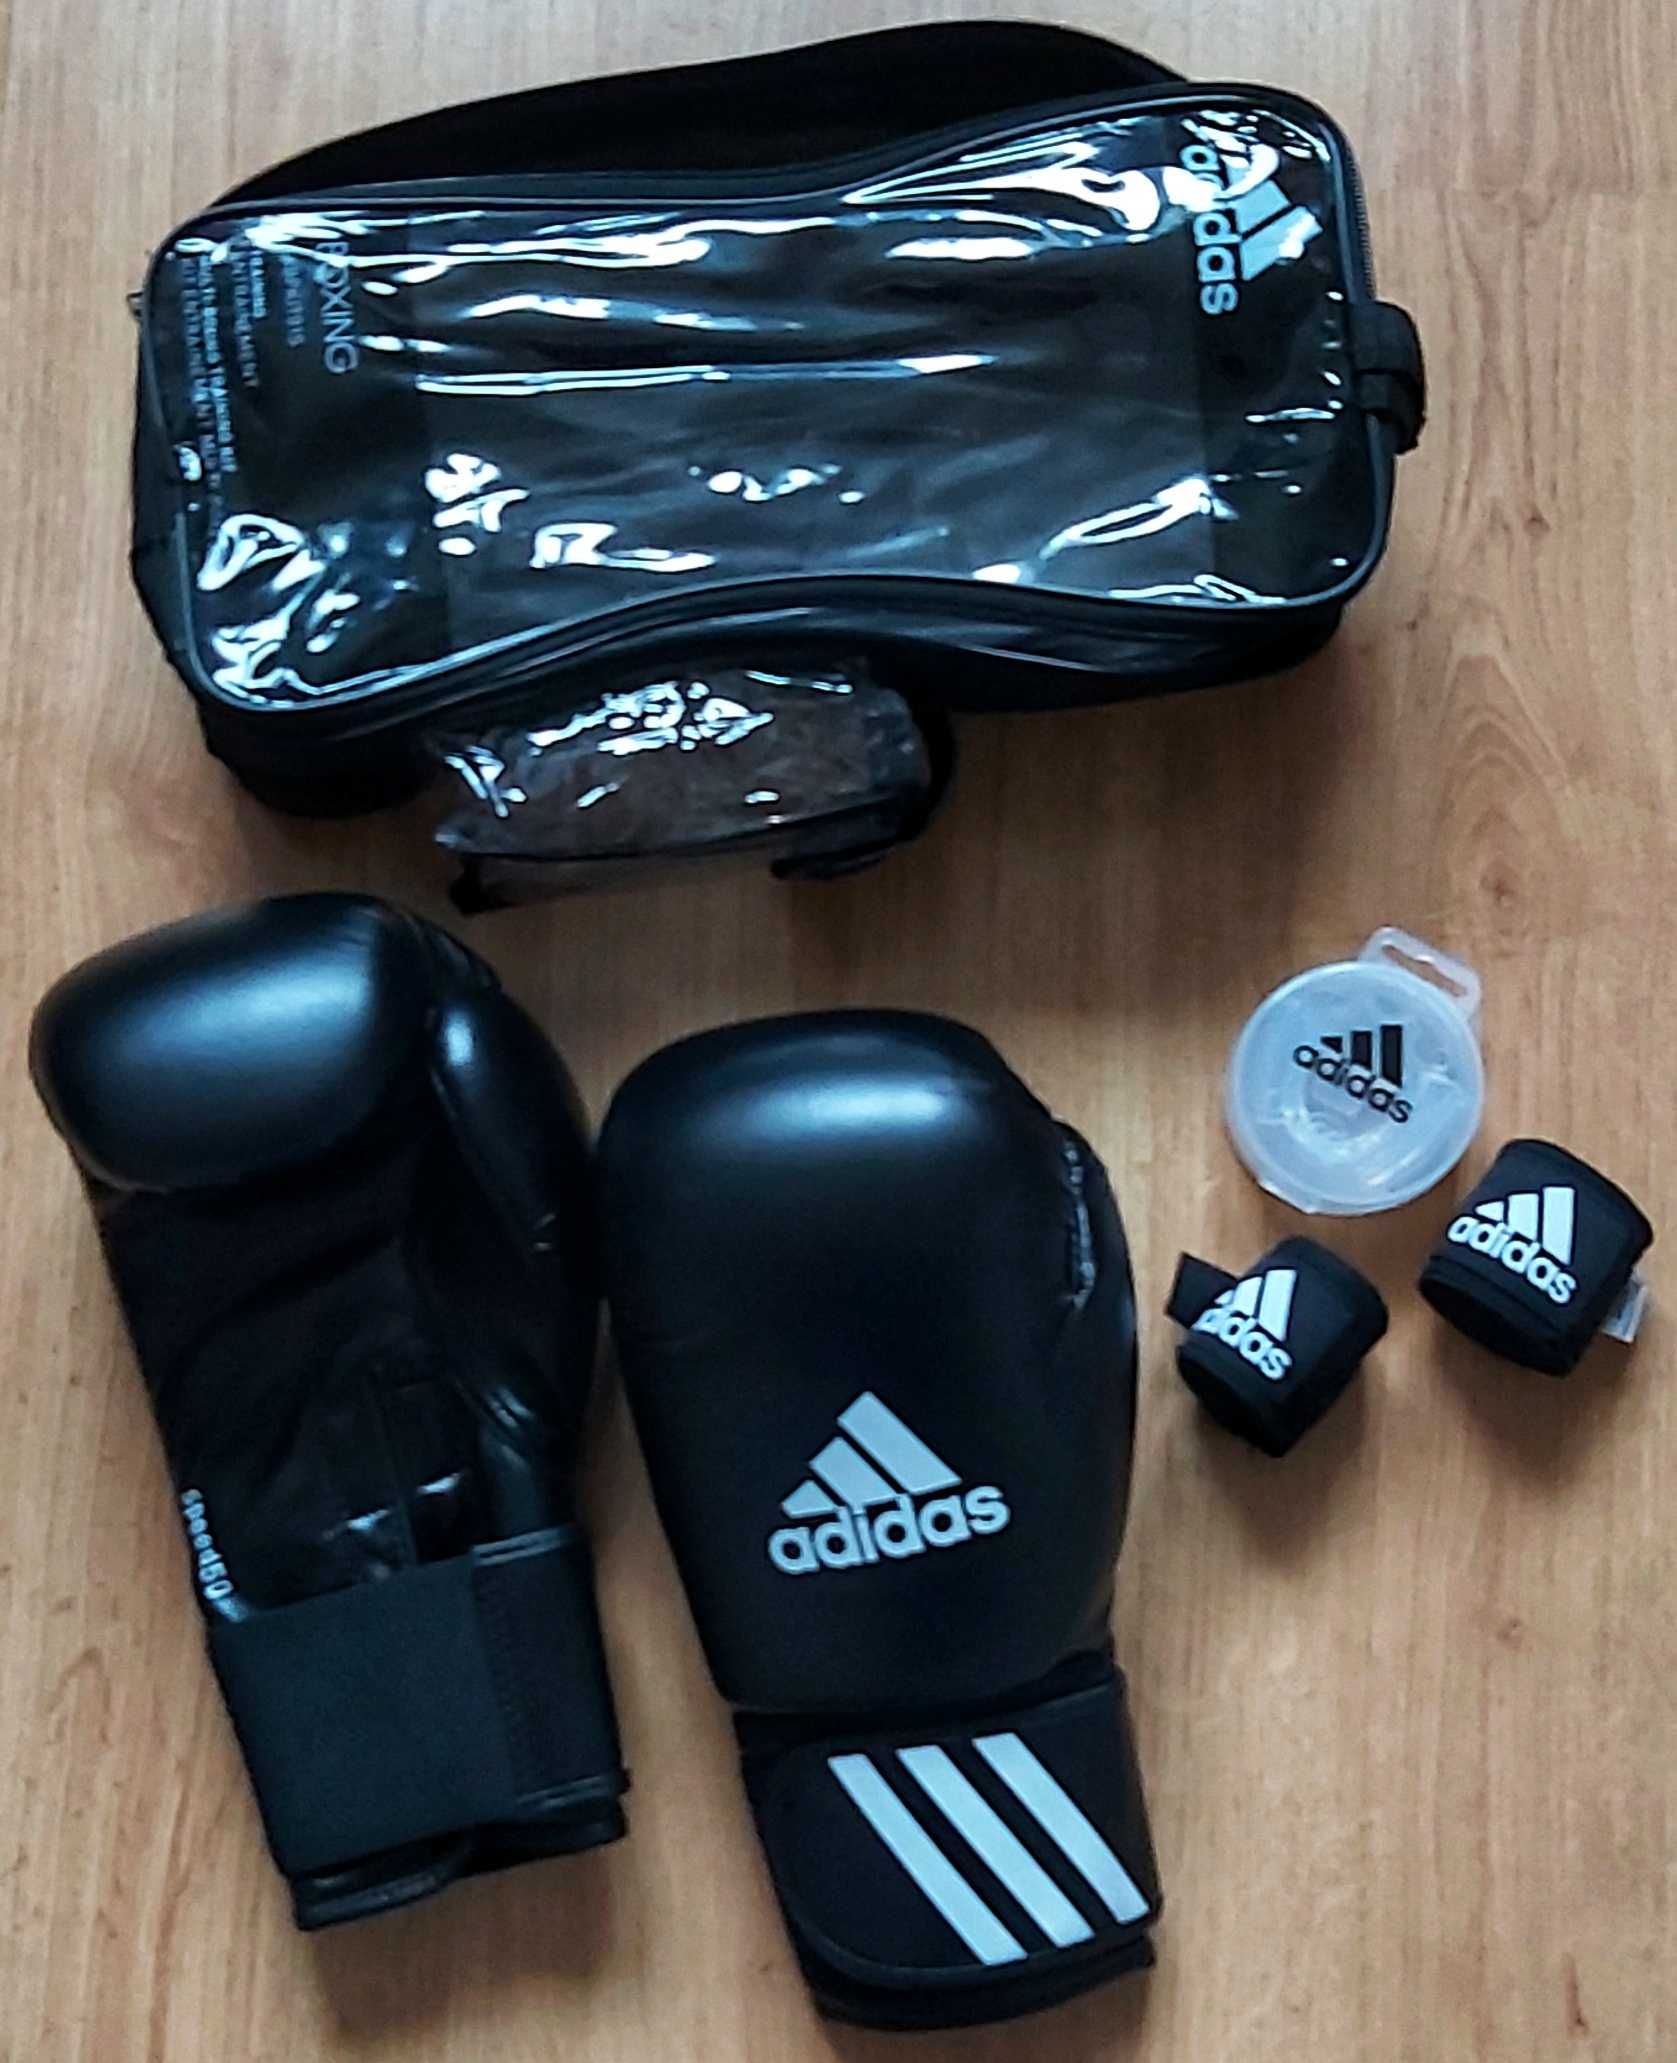 Zestaw bokserski Adidas; rękawice, taśmy, ochraniacz na żeby